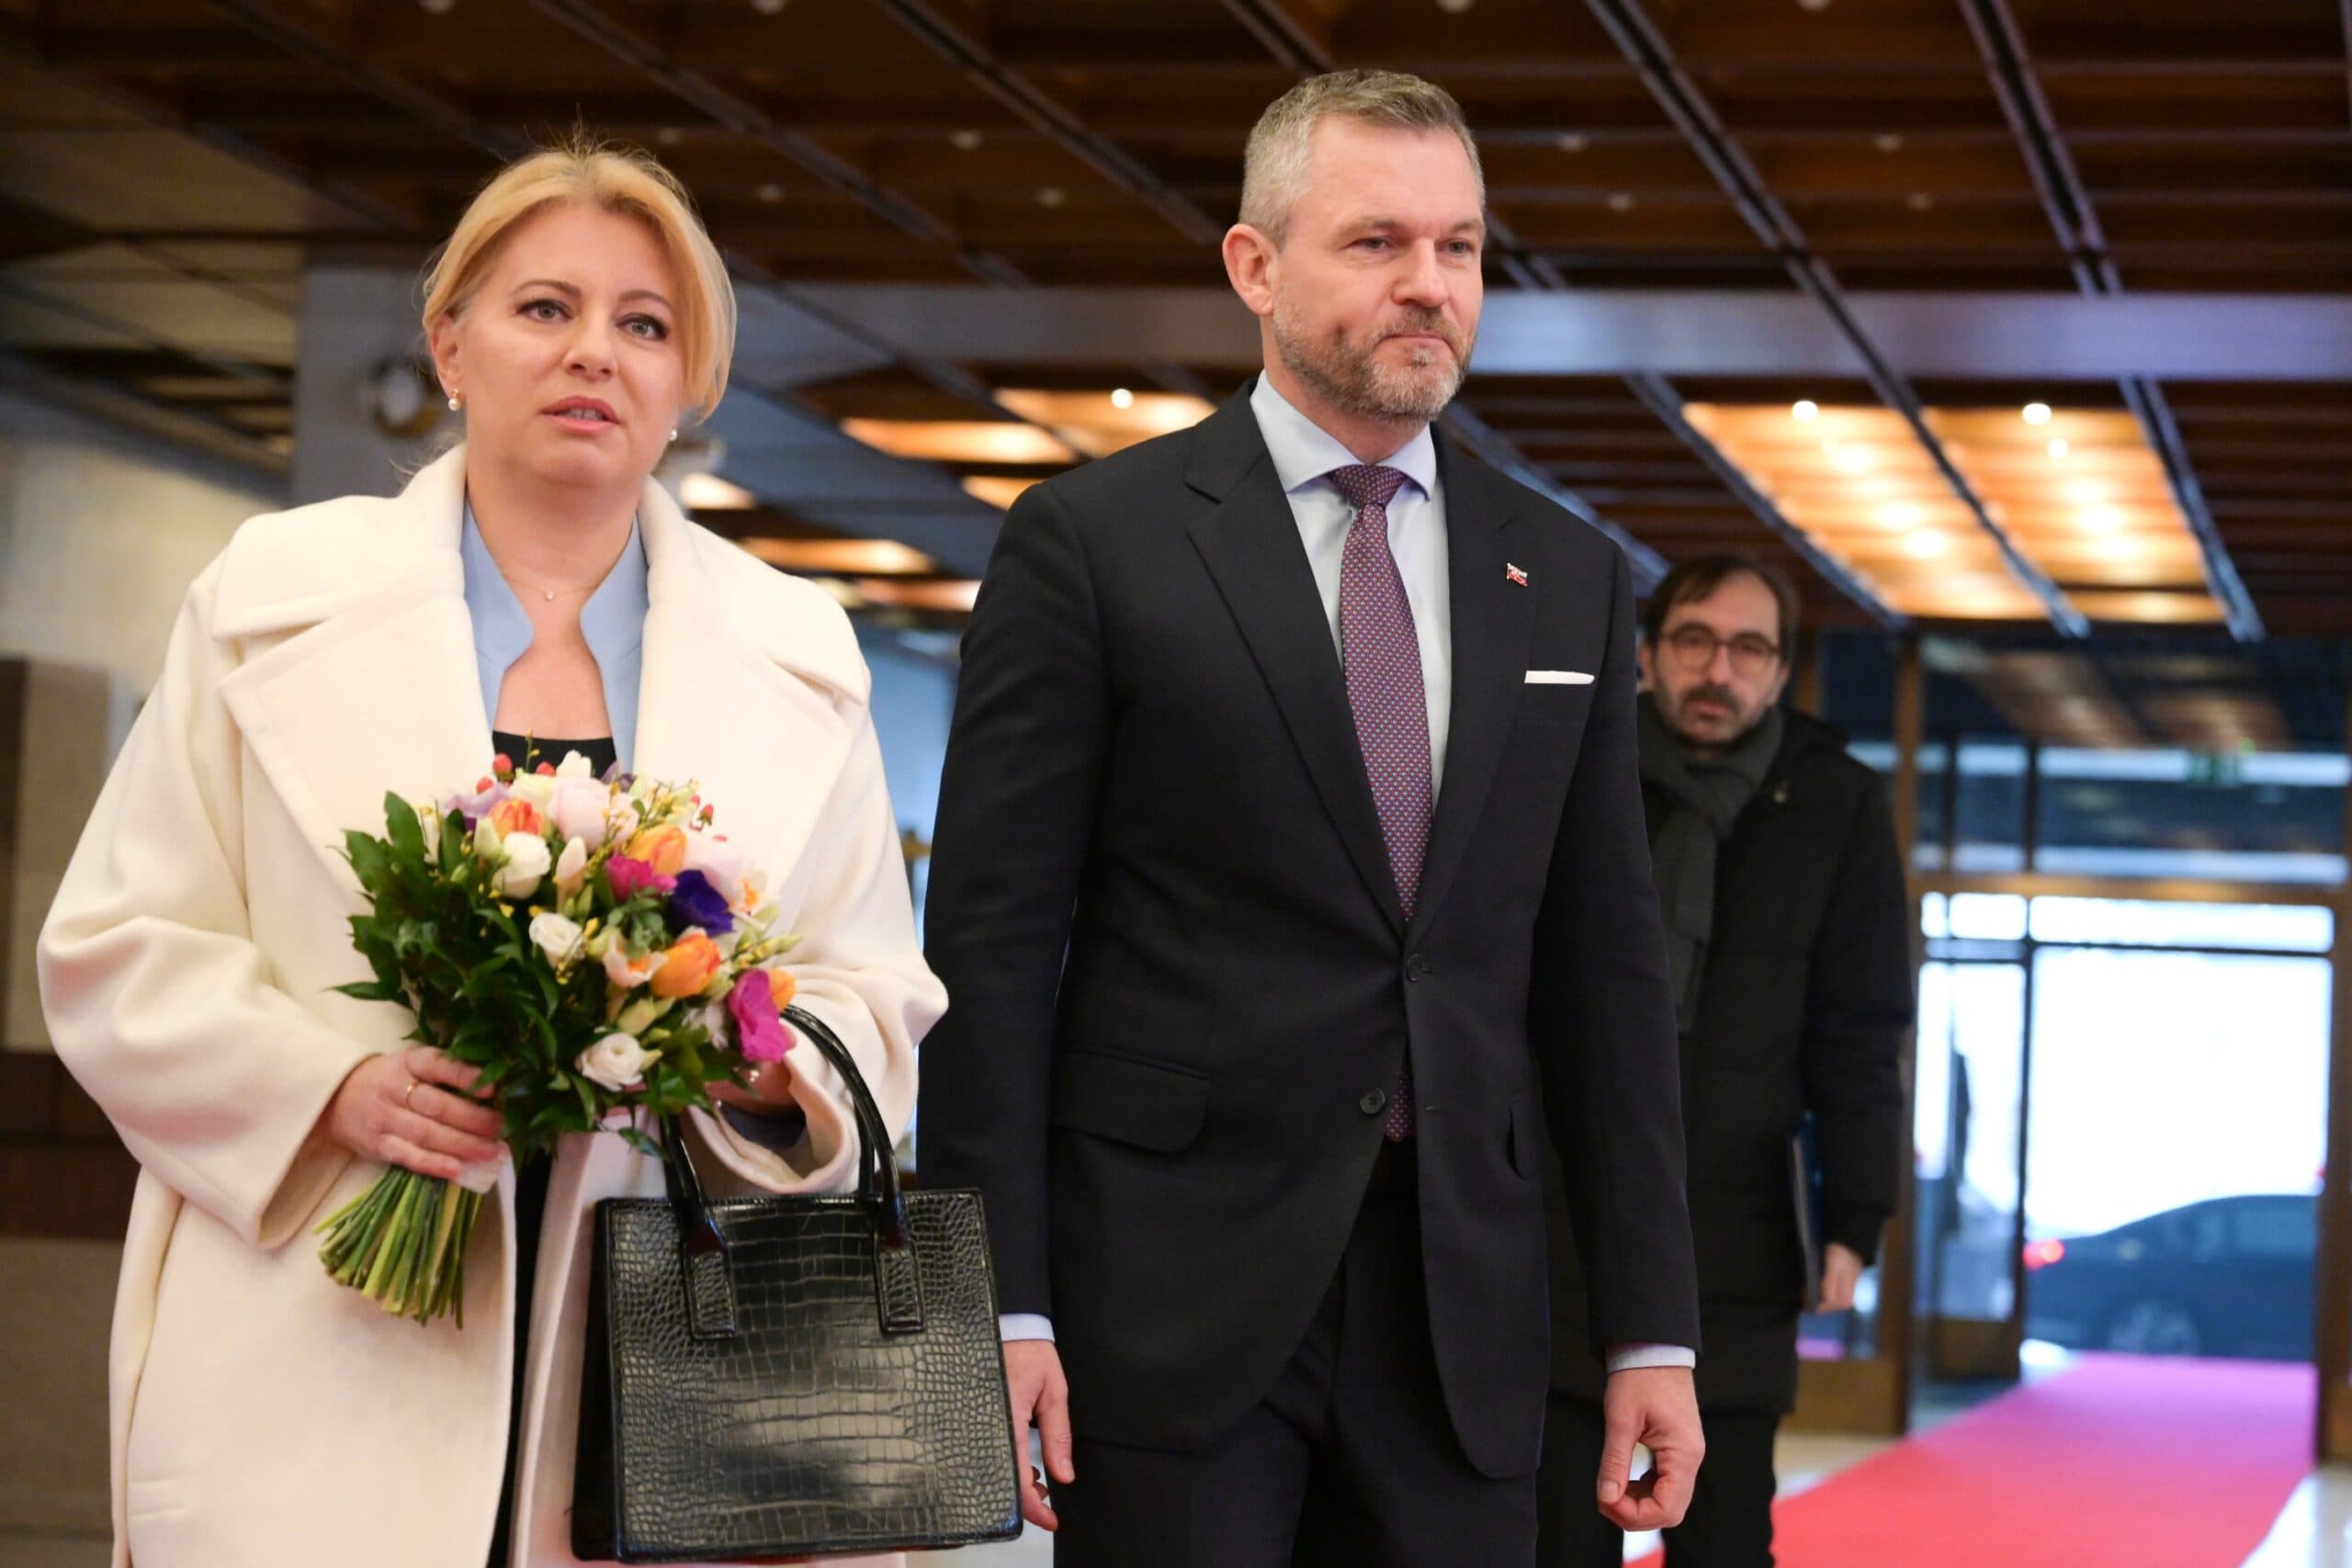 Čaputová és Pellegrini meghívta az összes parlamenti párt vezetőjét az elnöki palotába